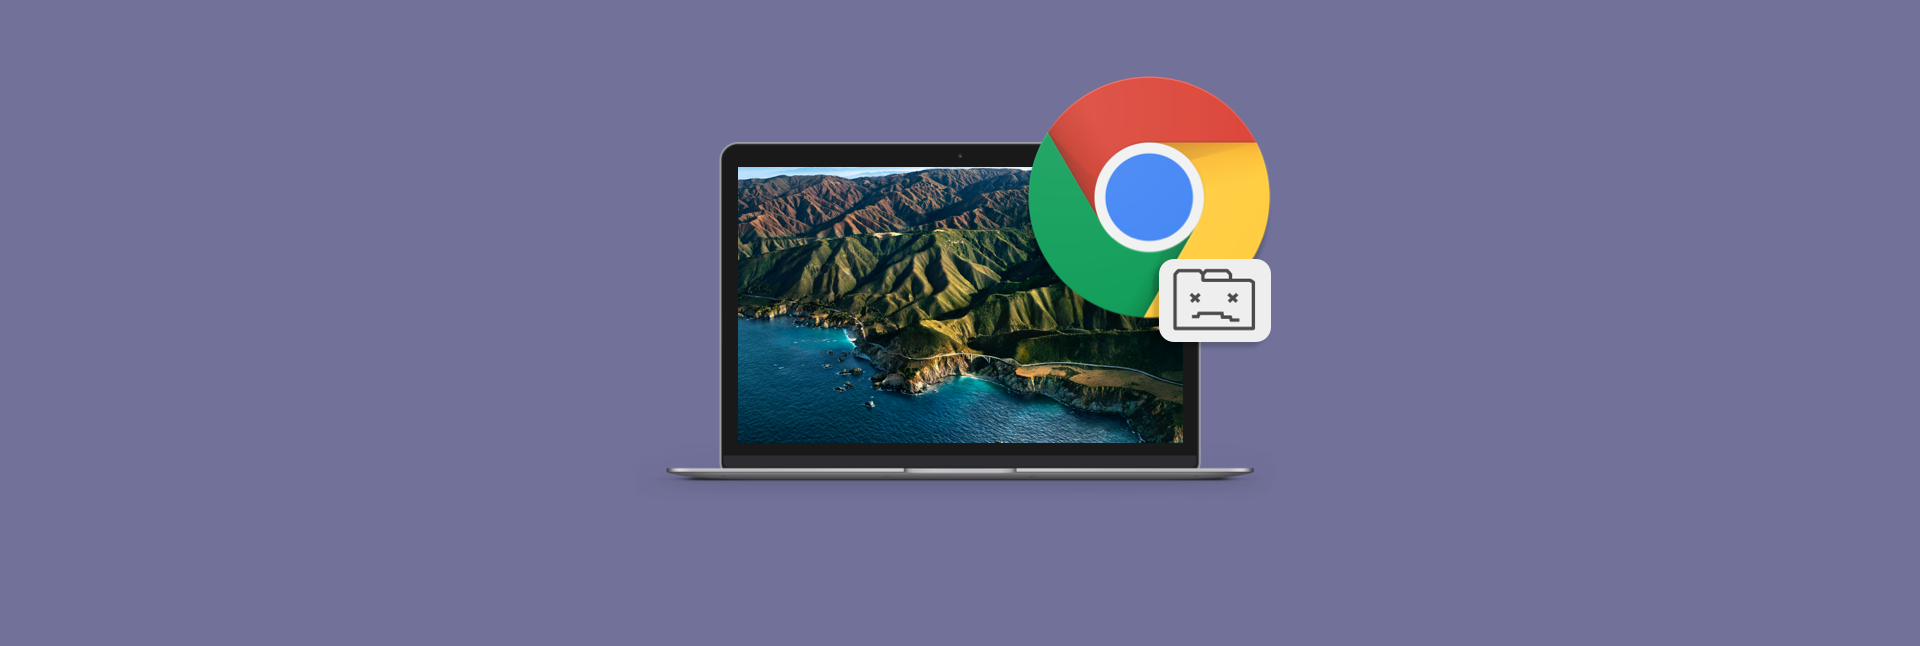 install google chrome for mac